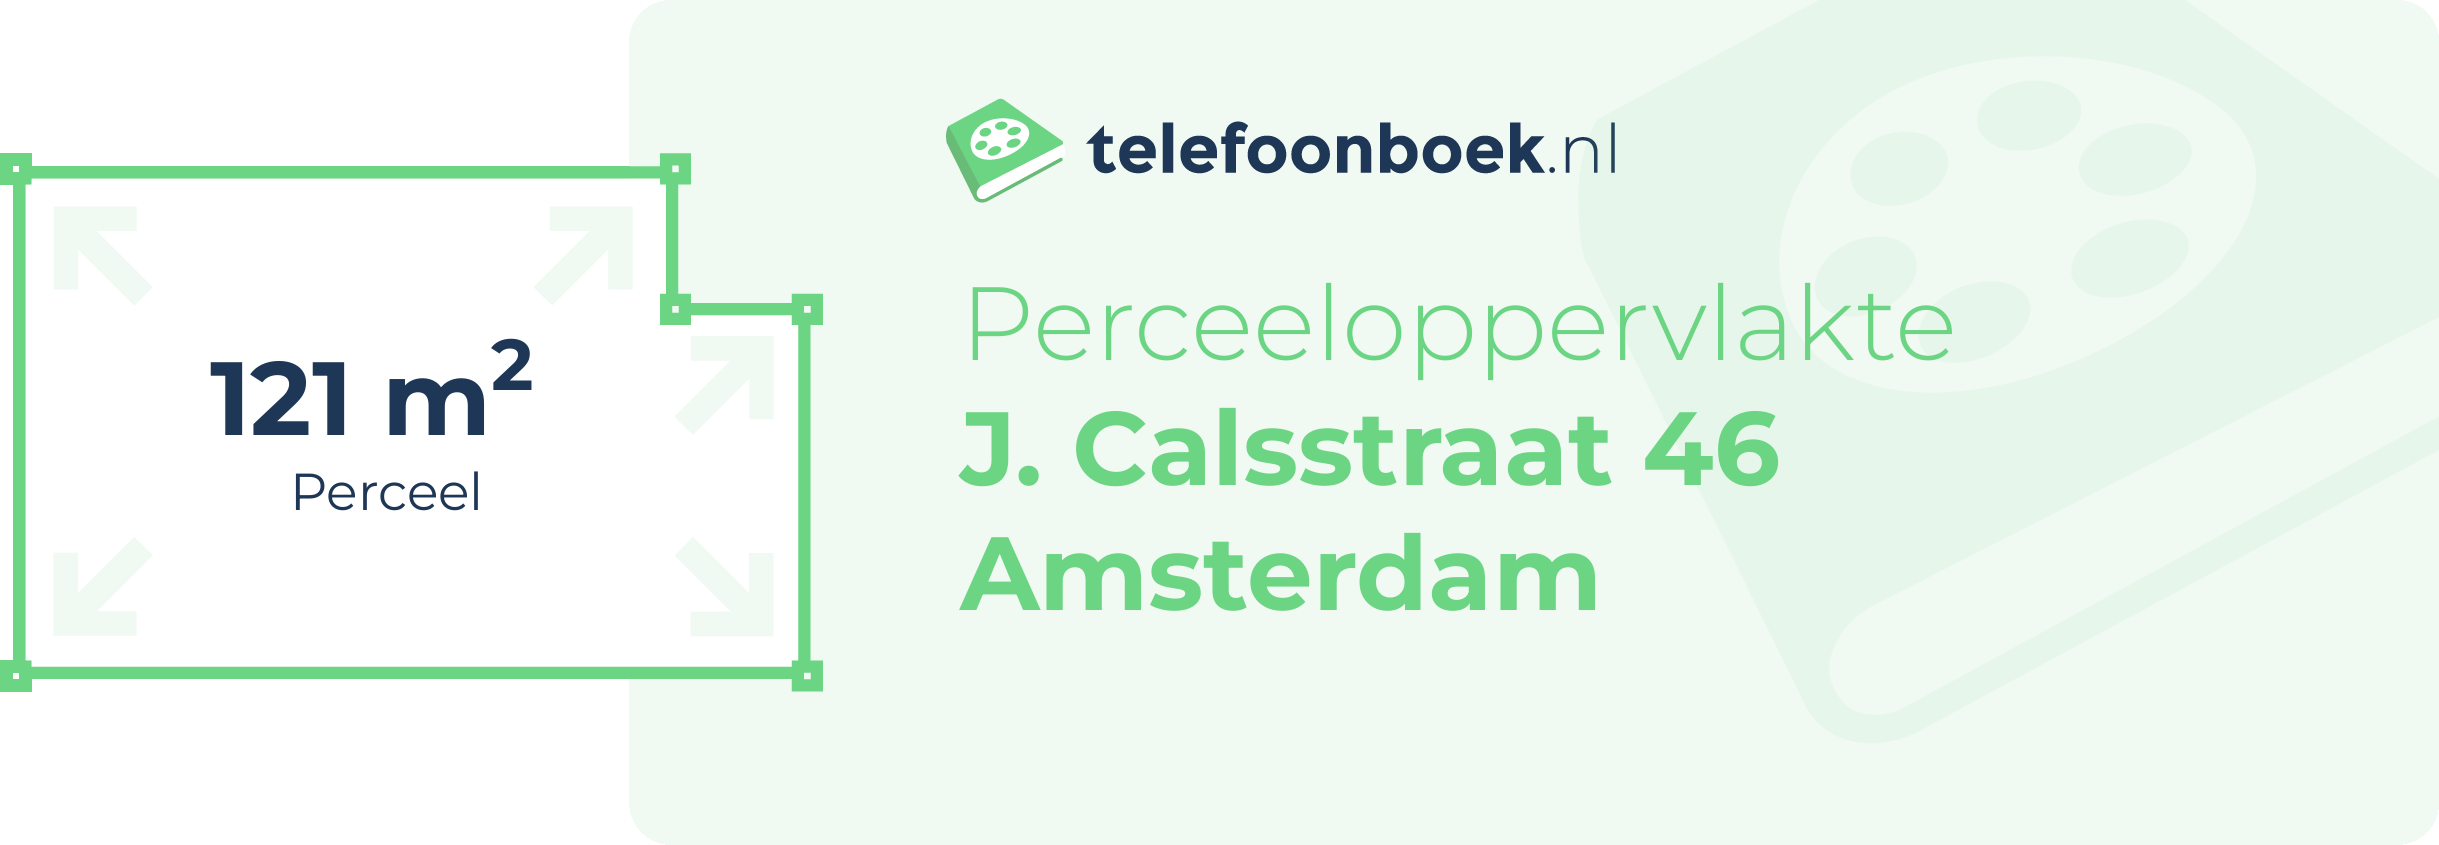 Perceeloppervlakte J. Calsstraat 46 Amsterdam